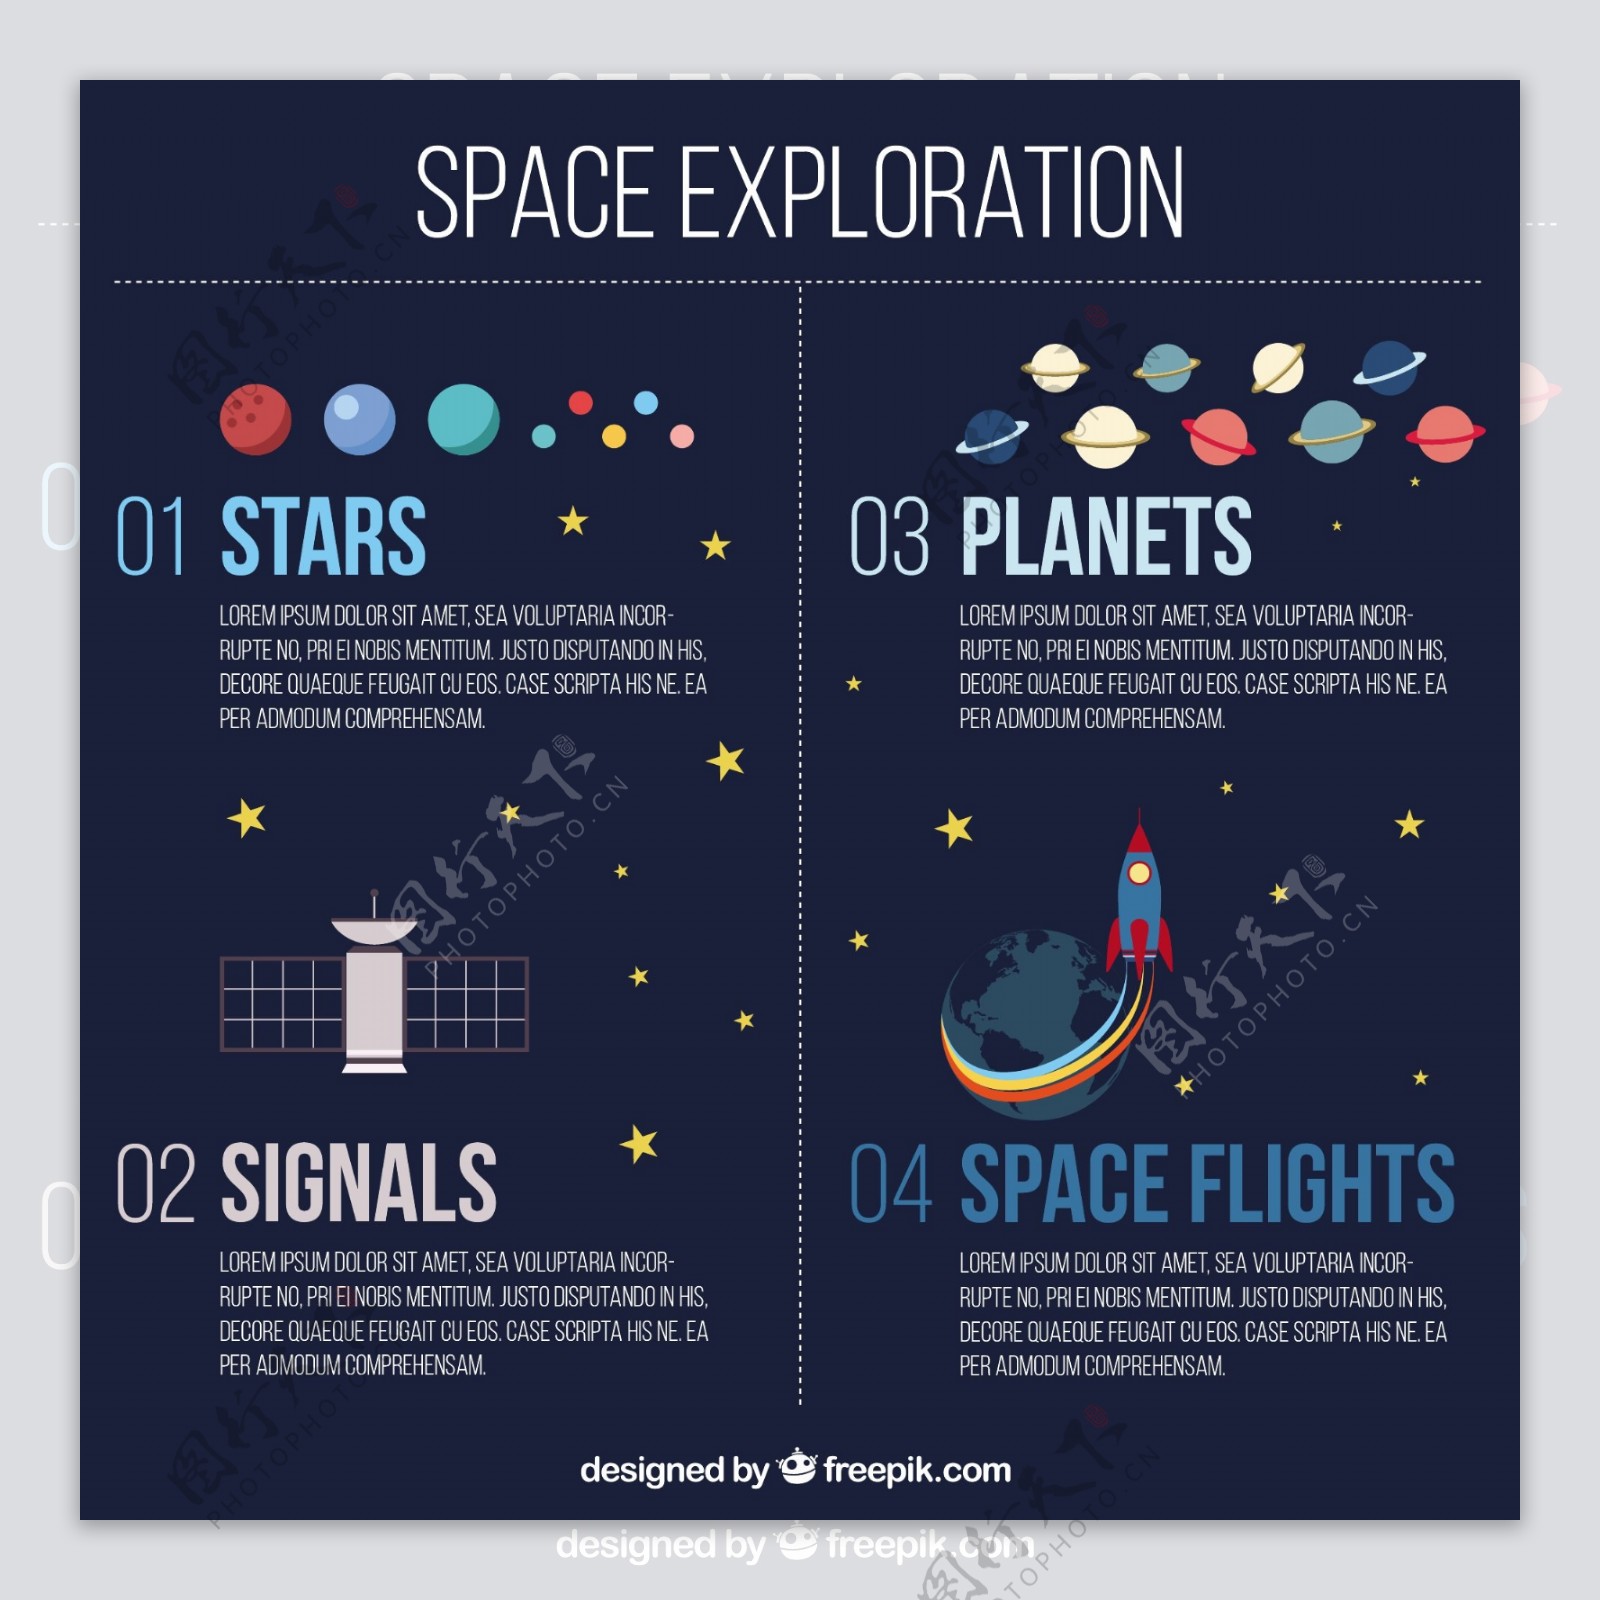 太空探索的信息图表